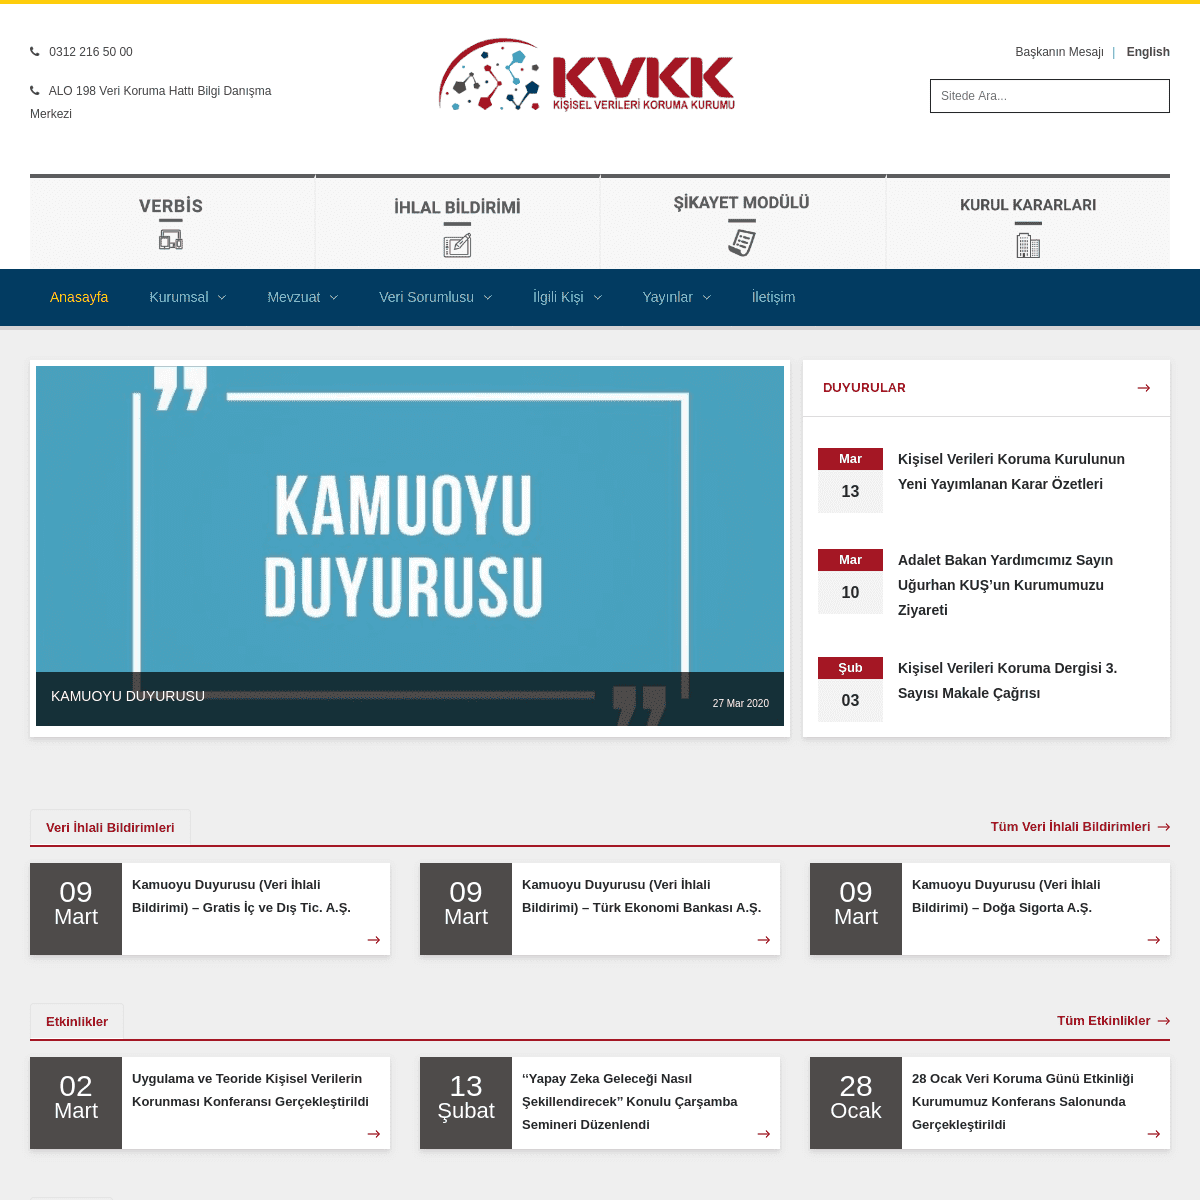 A complete backup of kvkk.gov.tr